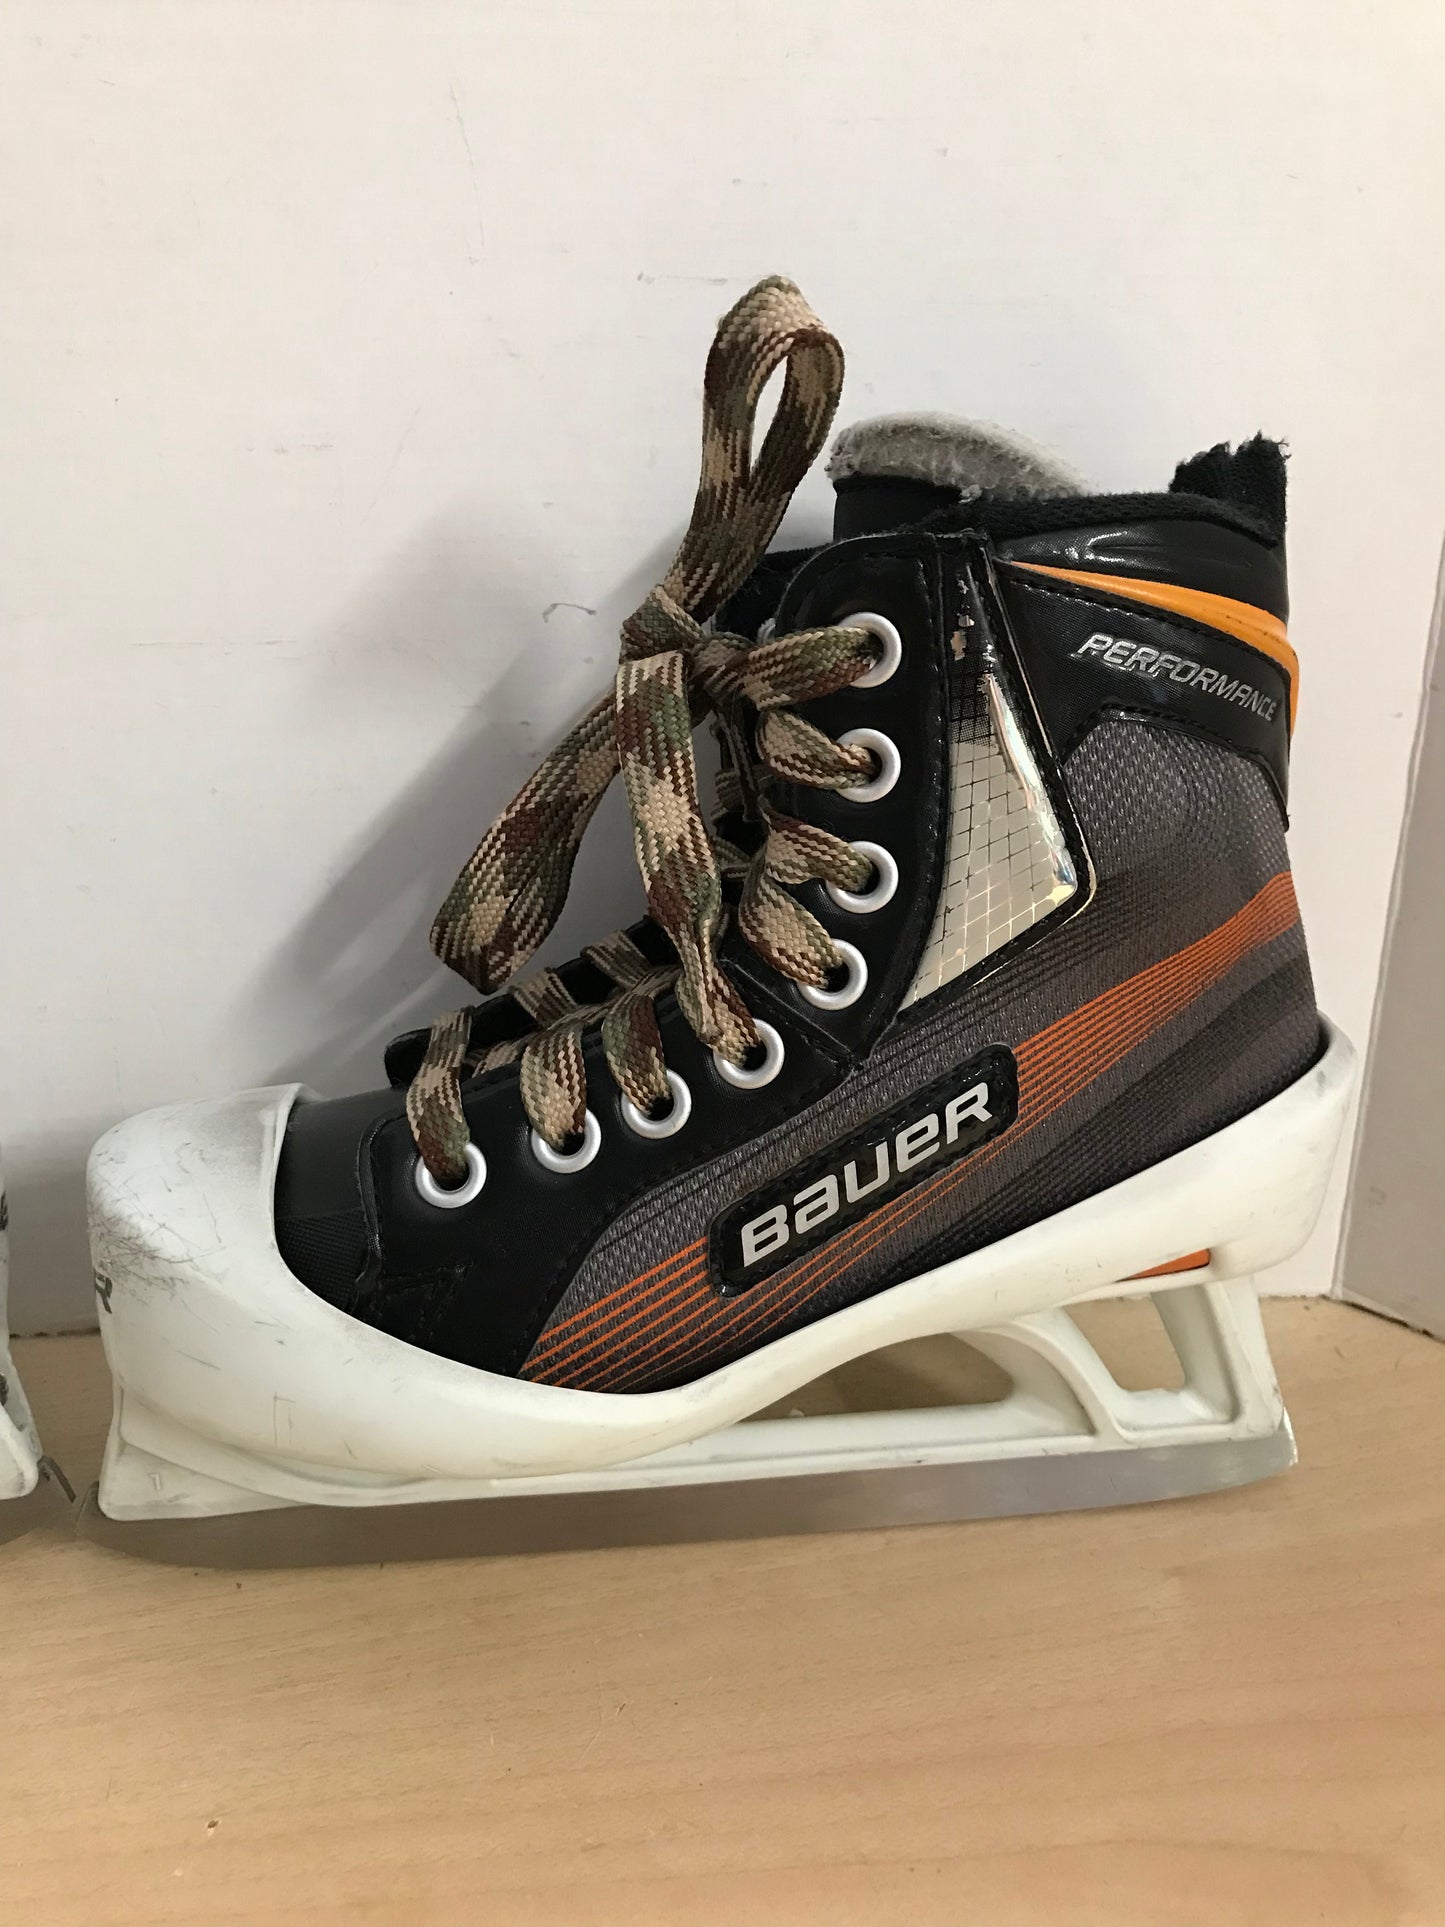 Hockey Goalie Skates Child Size 2 Shoe Size Bauer Performance PT 3440